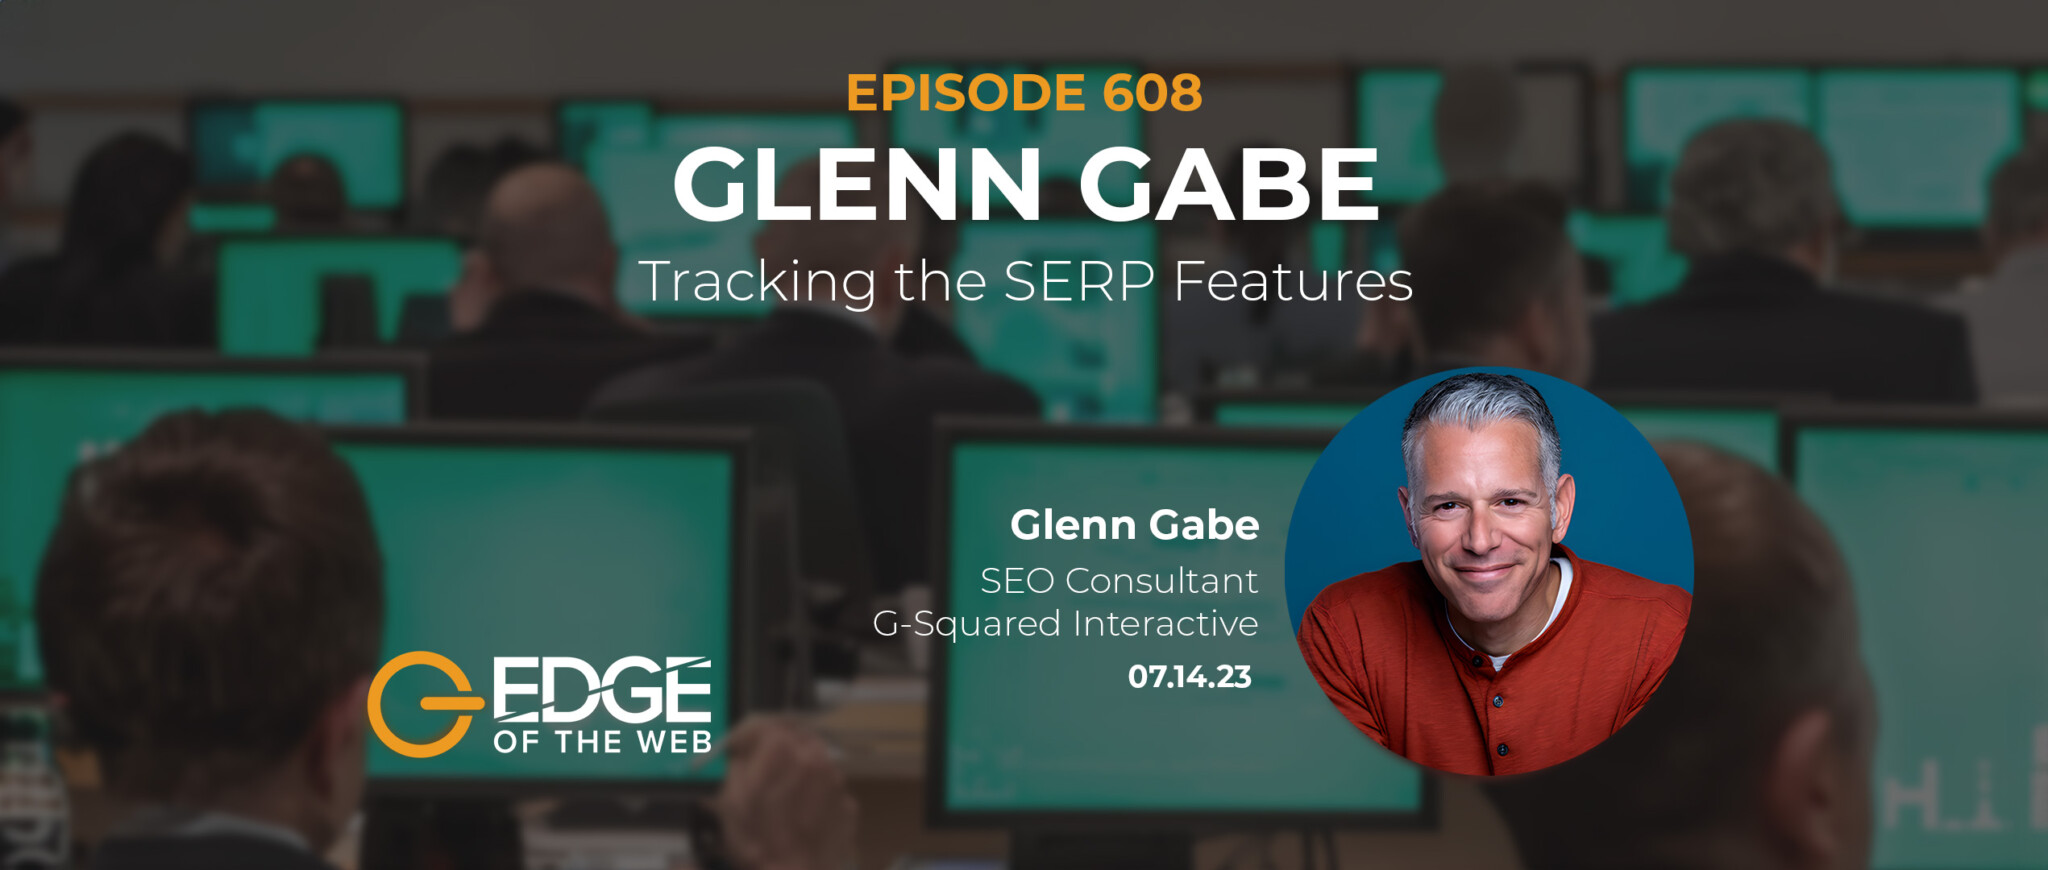 Glenn Gabe - EDGE Episode 608 Featured Image